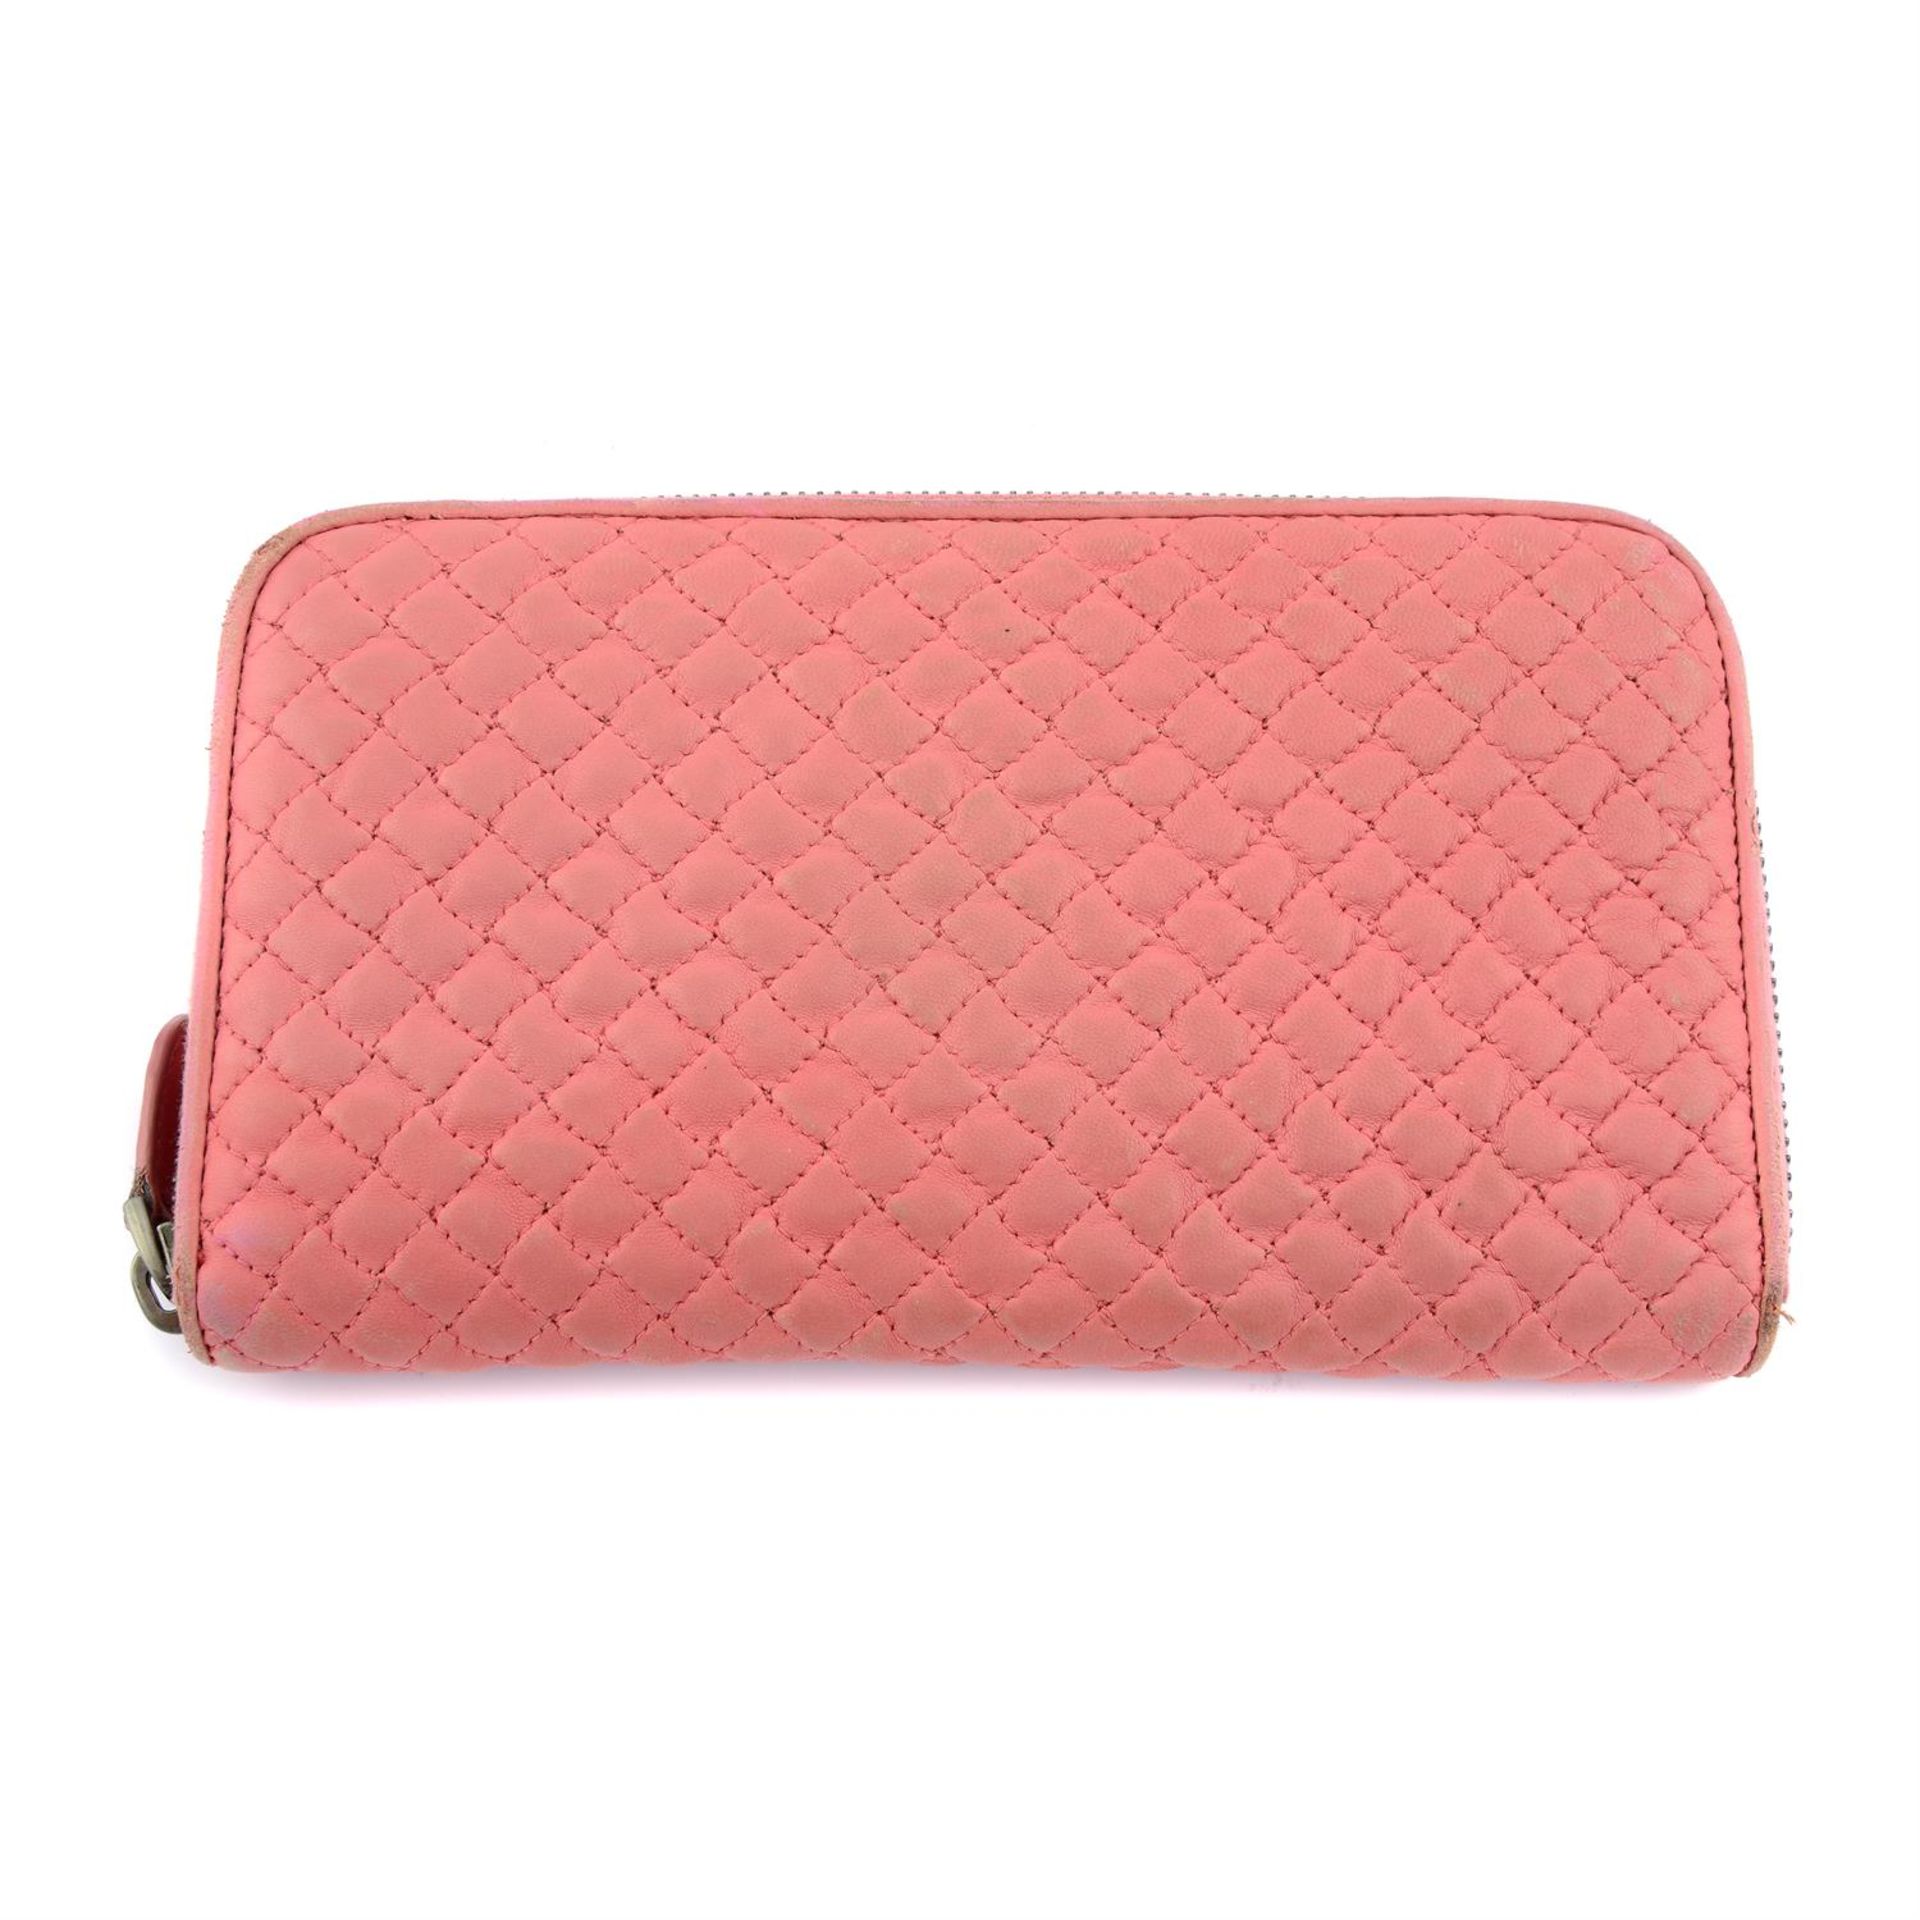 BOTTEGA VENETA - a pink leather wallet.